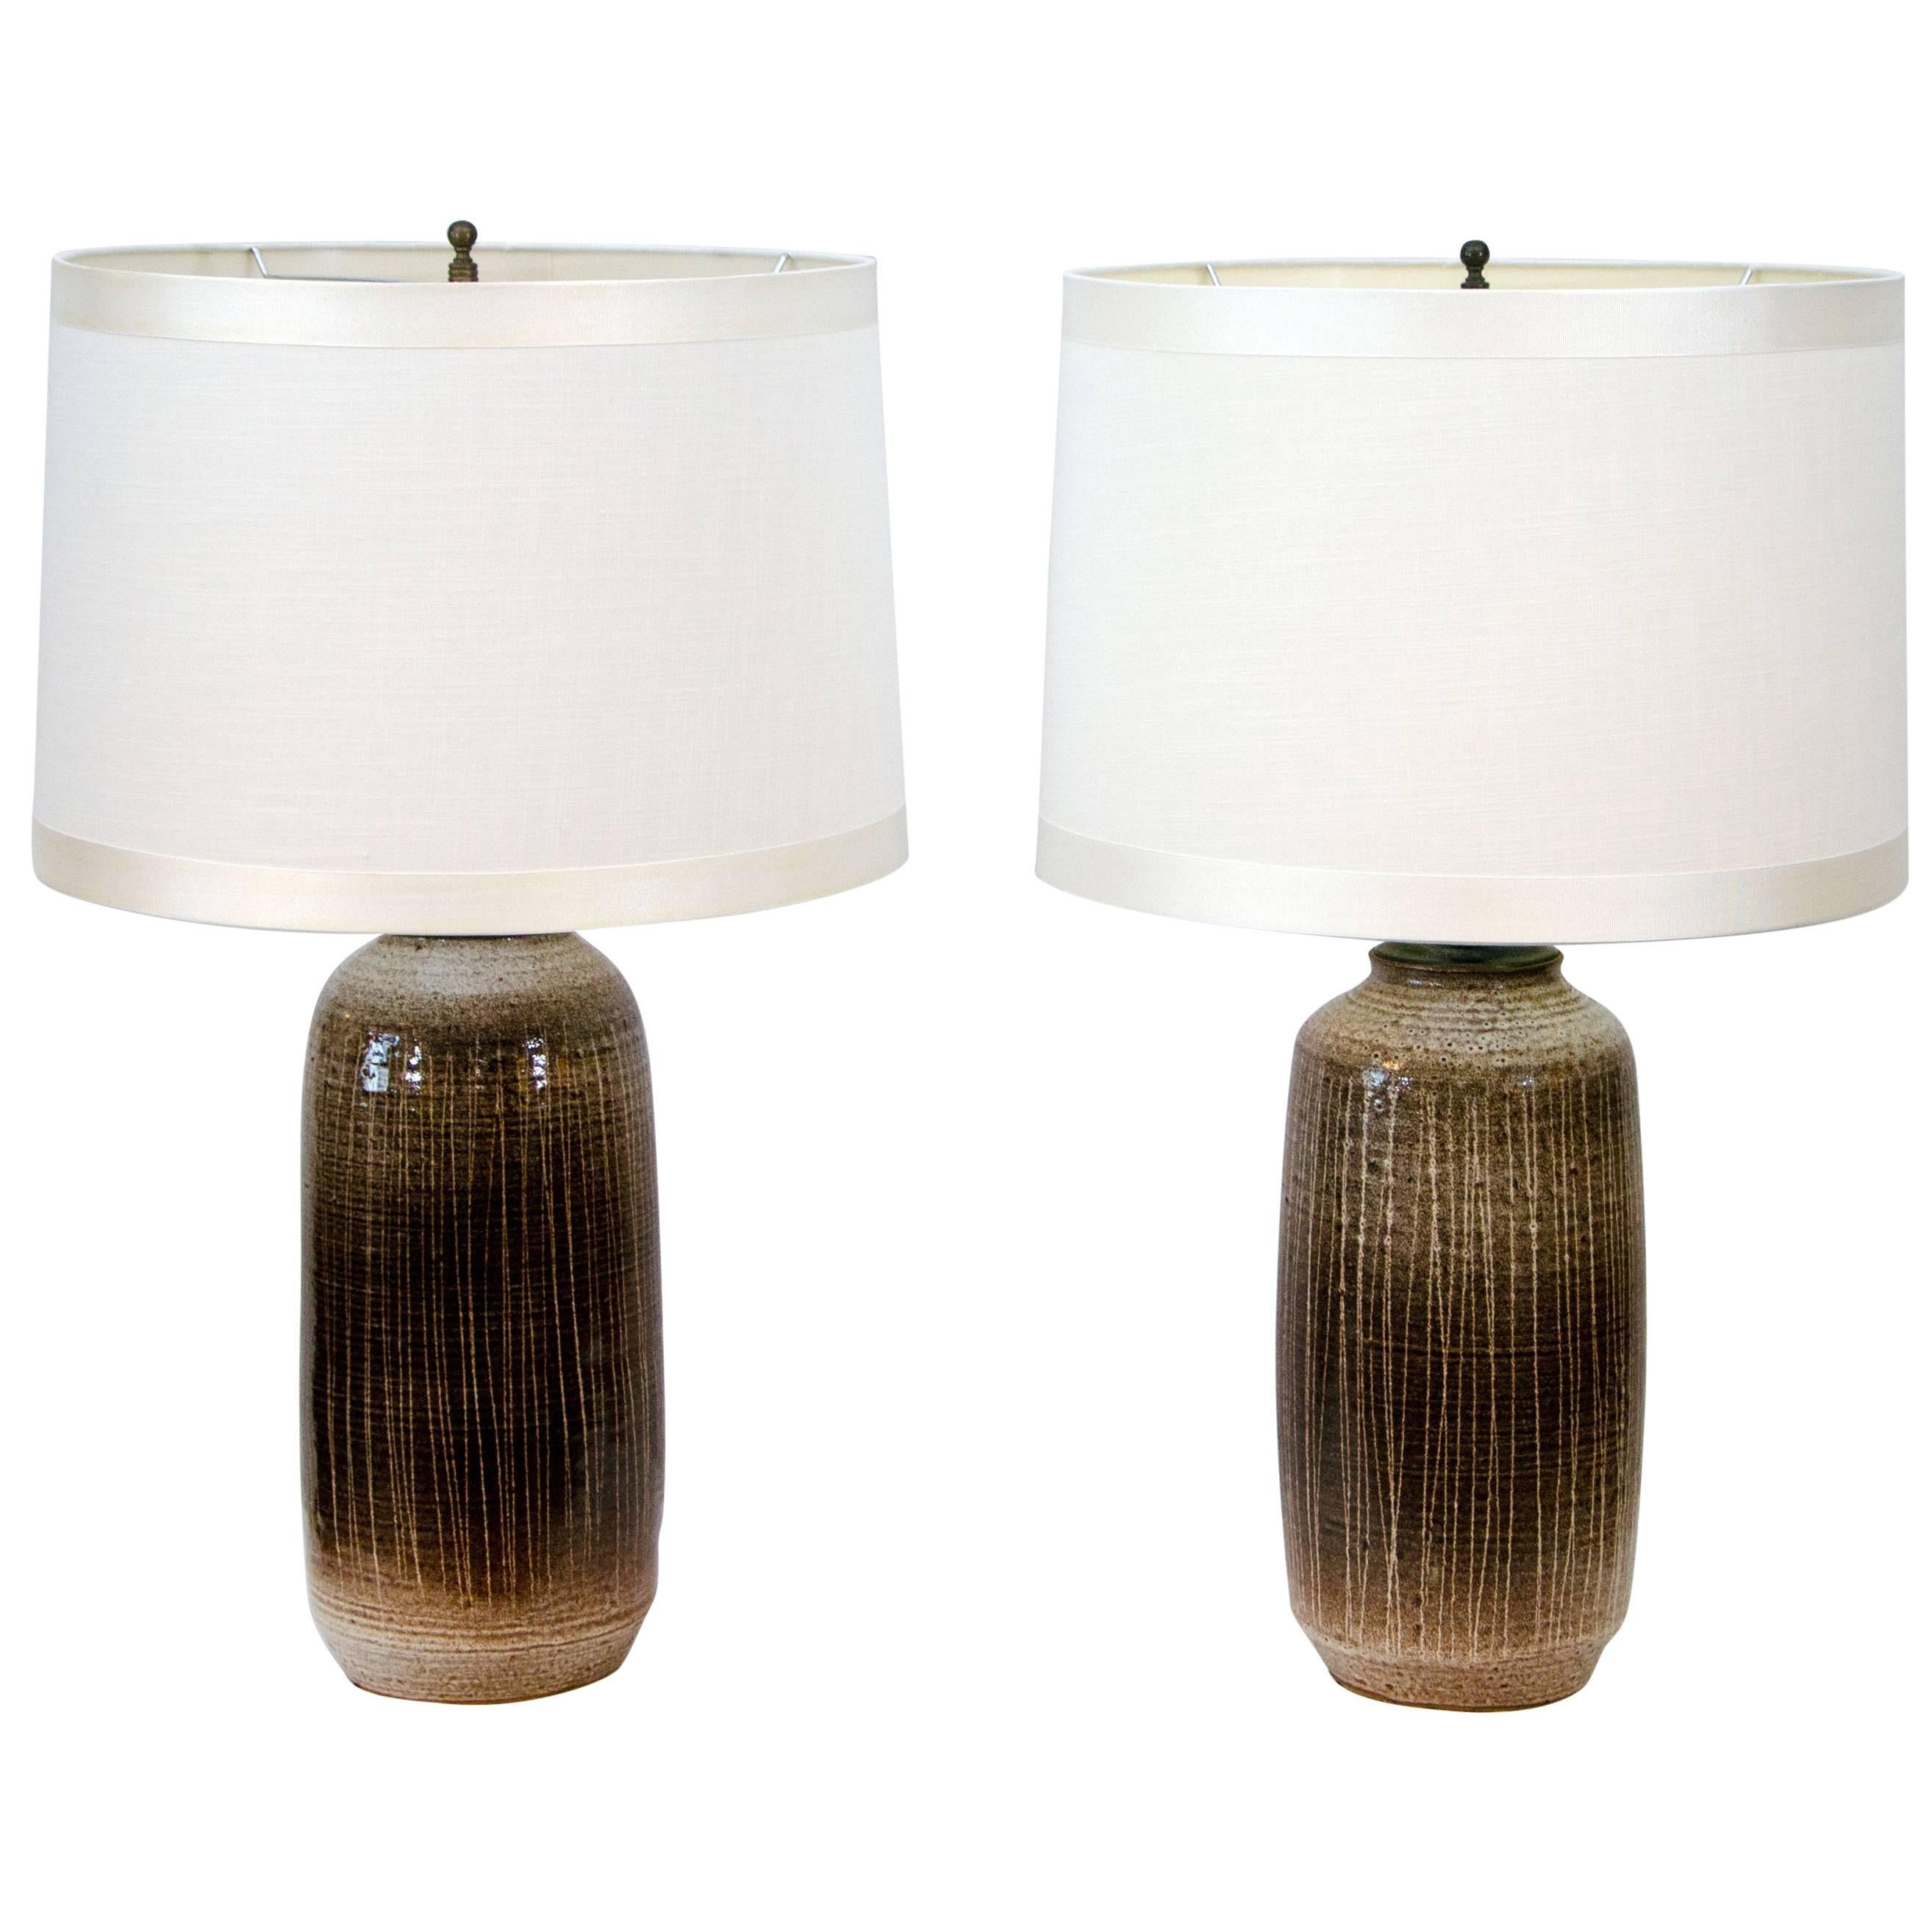 Pair of Ceramic Table Lamps by Antonio Prieto